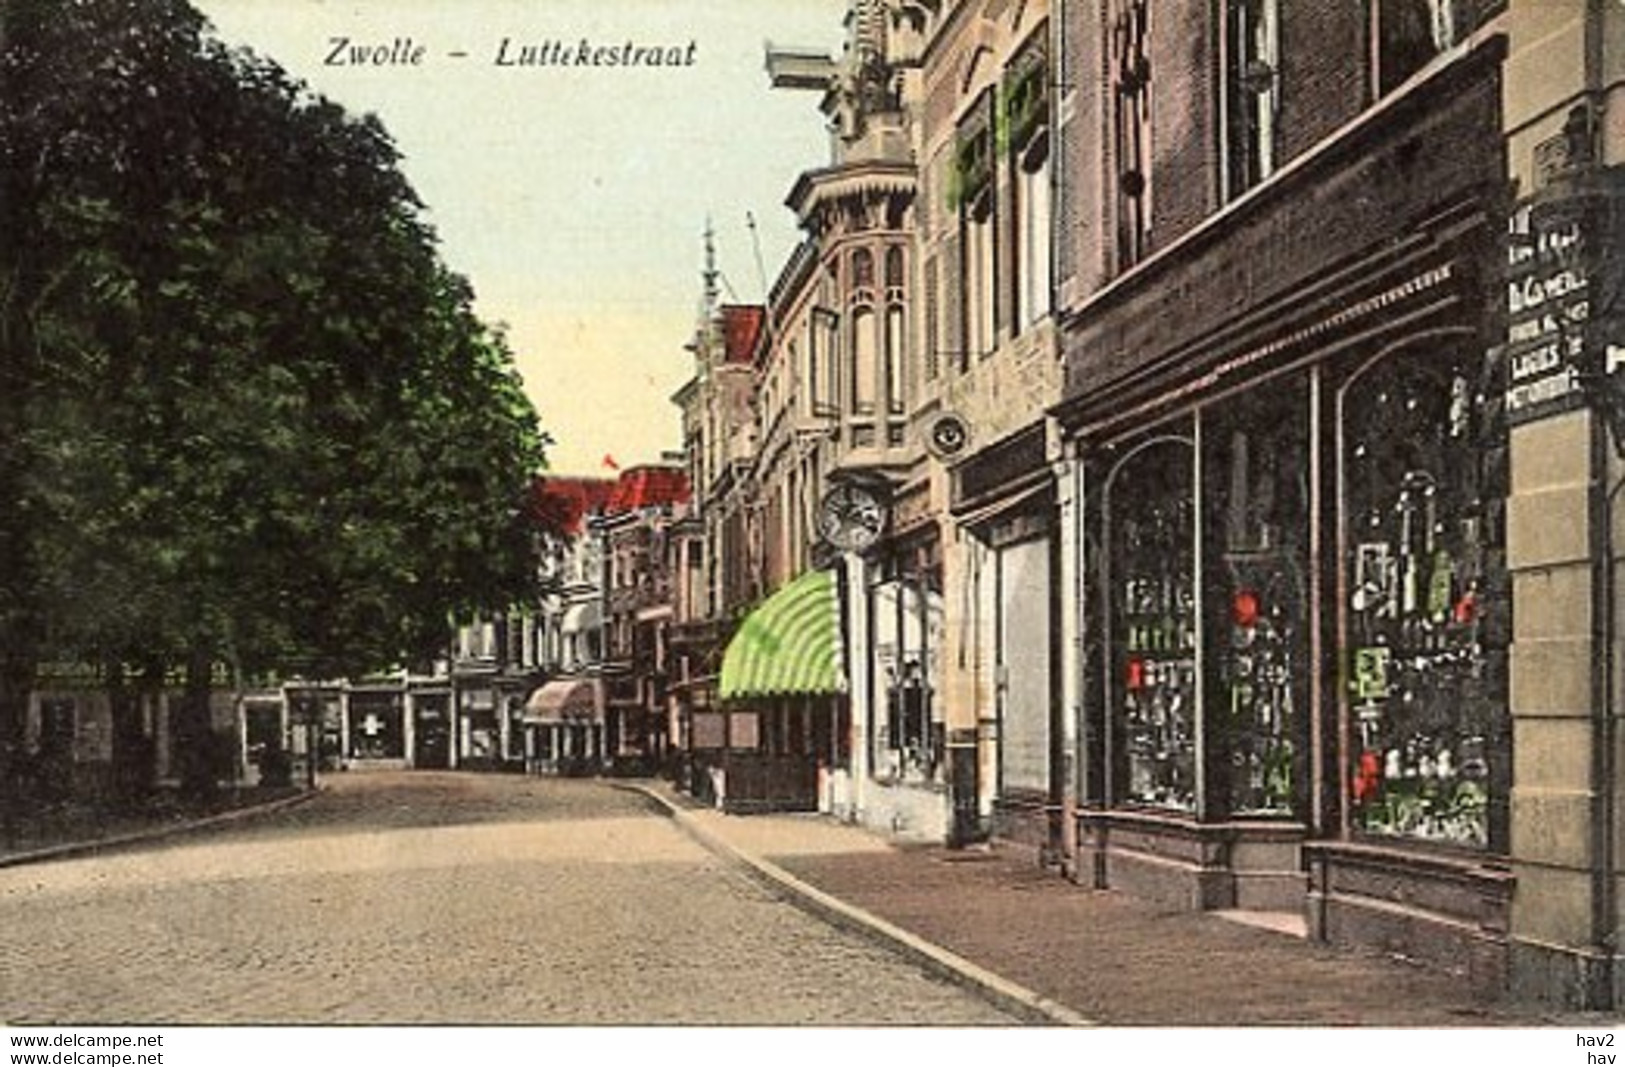 Zwolle Luttekestraat AM2891 - Zwolle